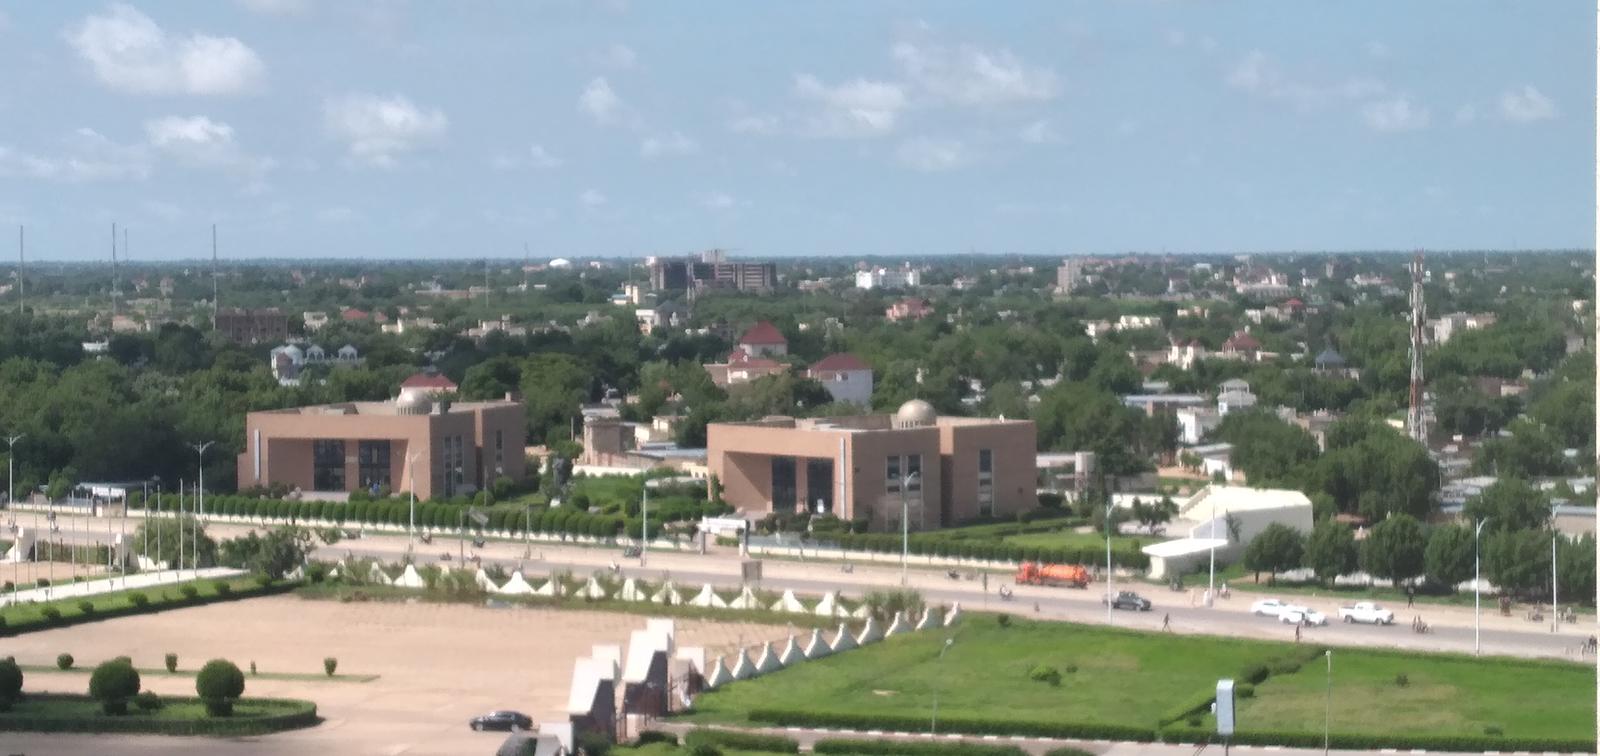 Tchad : Prolifération des écoles privées non autorisées à N’Djamena